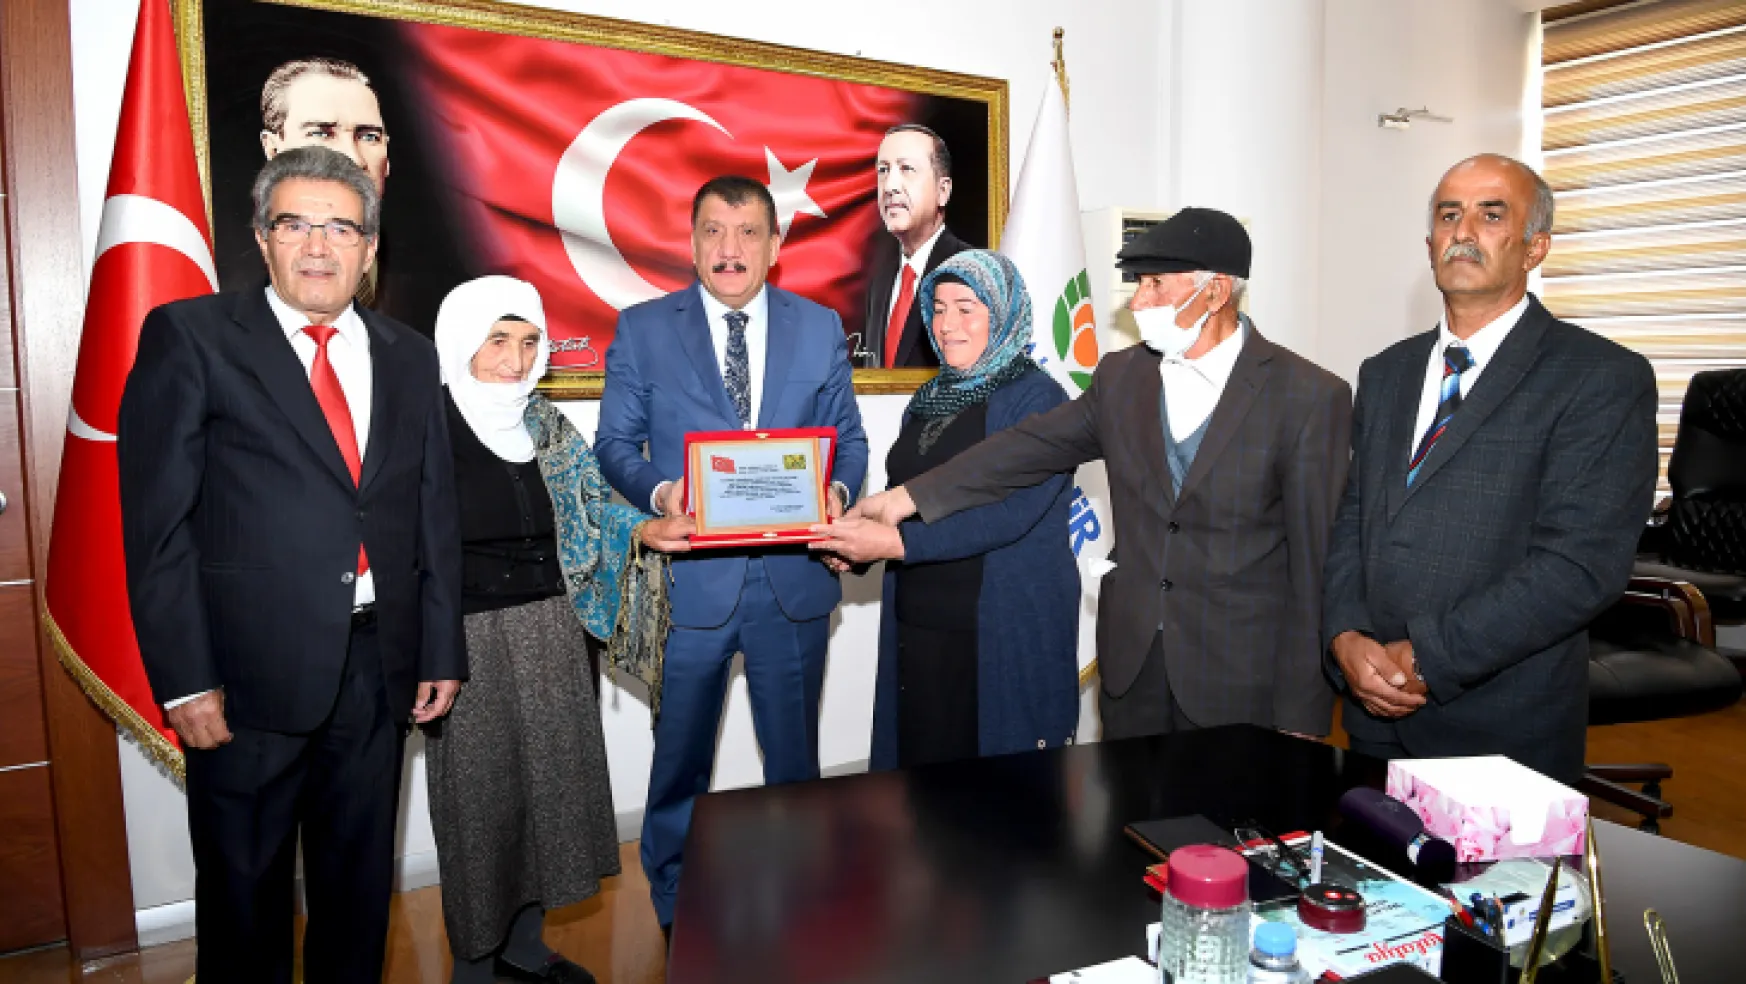 Narmikan Heyetinden Başkan Gürkan'a Teşekkür Ziyareti